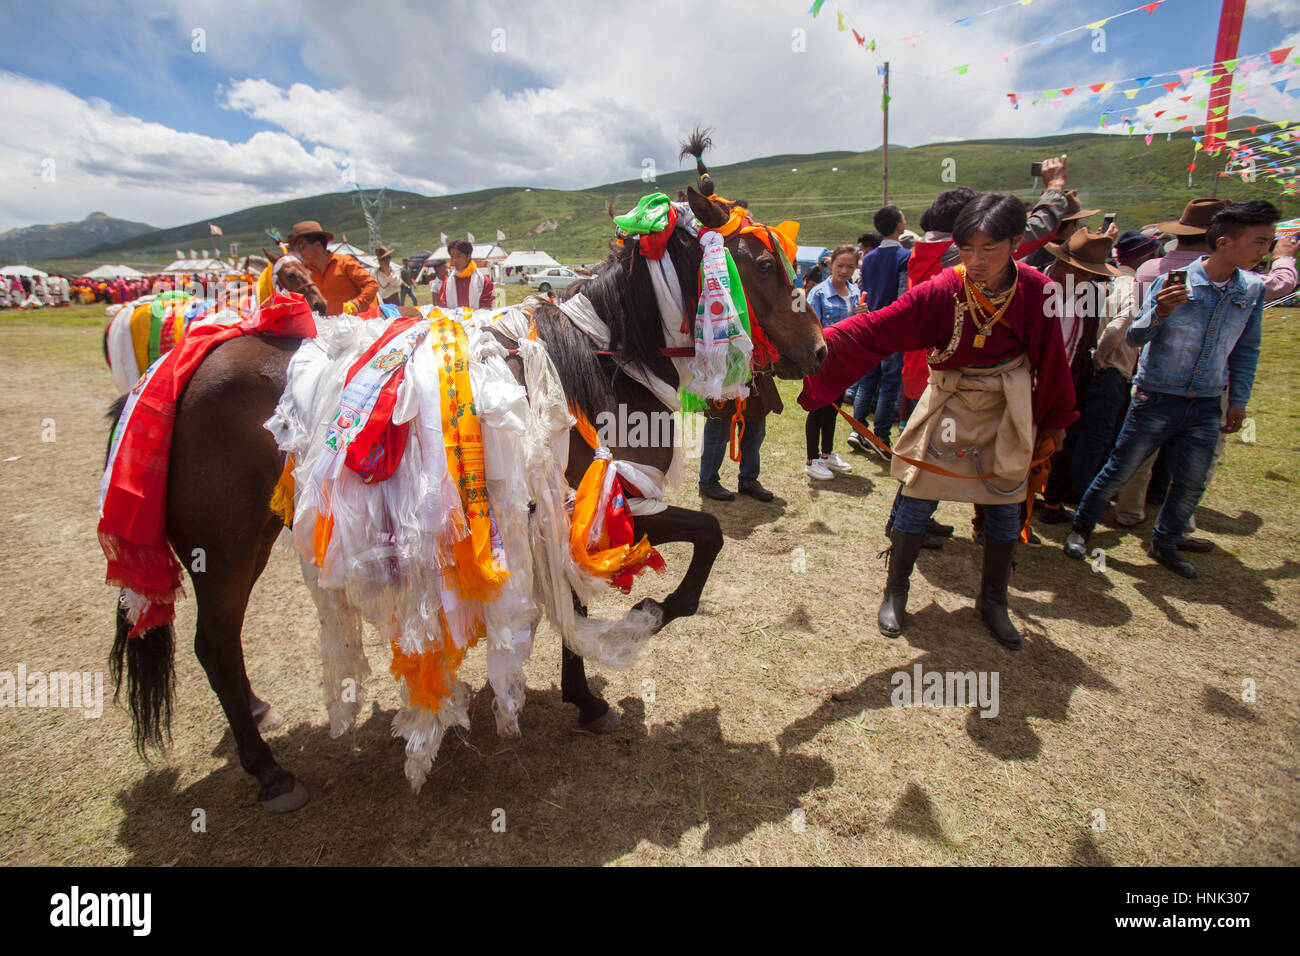 Le défilé des chevaux gagnant lors des festivités au cours de la fête du cheval à Manigango le plateau tibétain dans le Sichuan, en Chine. Banque D'Images